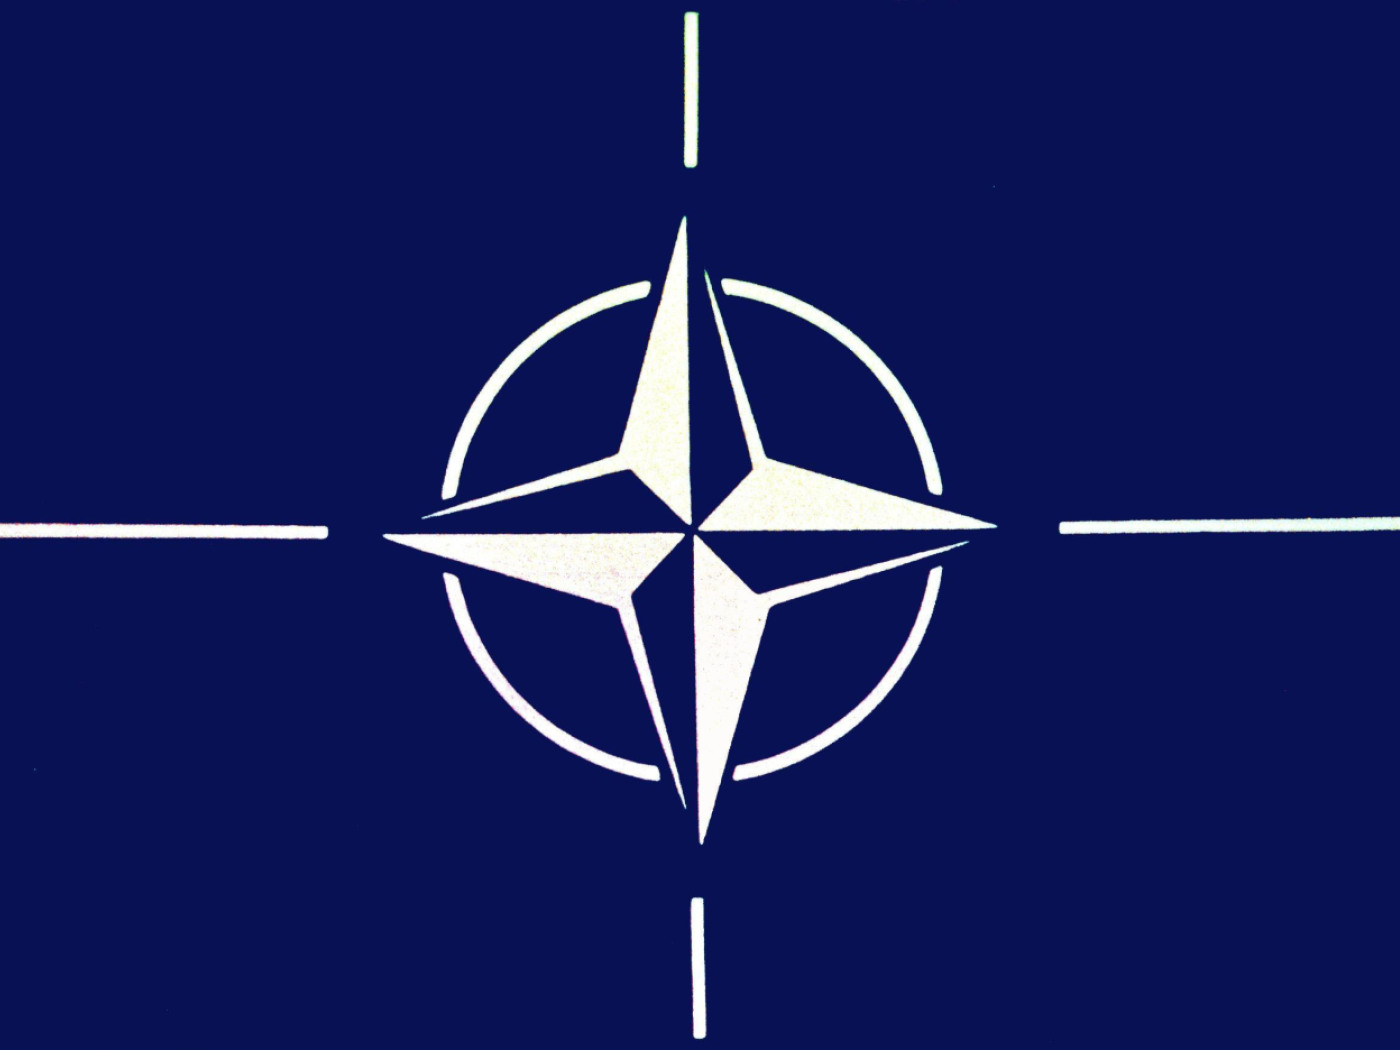 وقّعت الحكومة الفدرالية اتفاقية تنظيم الوضع القانوني لمكتب اتصال الناتو في سويسرا.